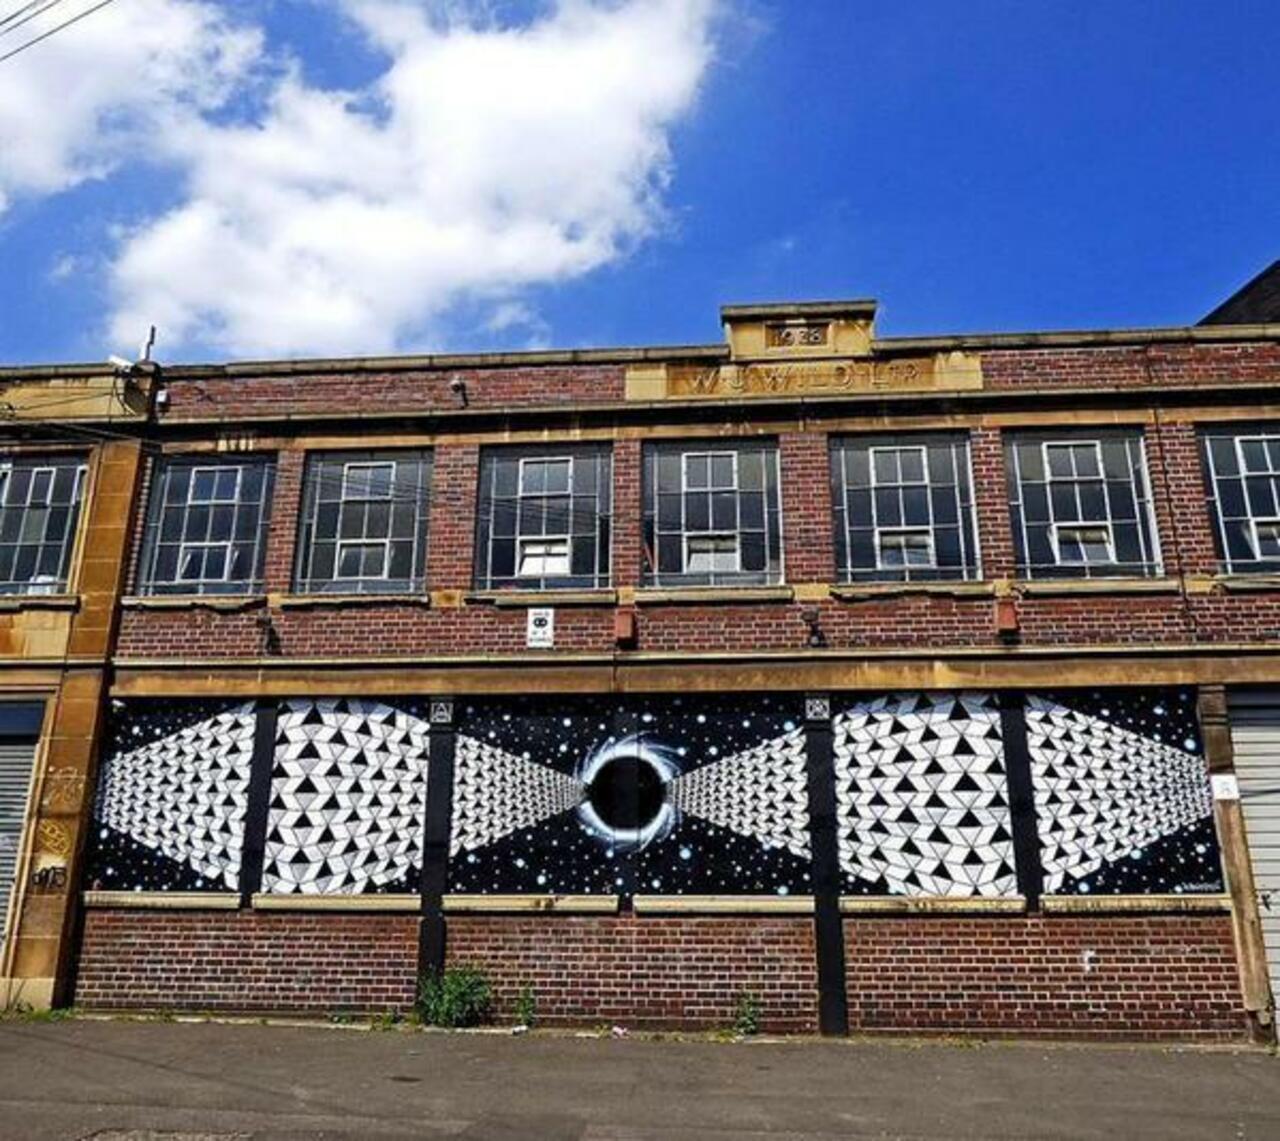 Artista: Annatomix 
Birmingham, Inglaterra
#art #streetart #mural #graffiti http://t.co/WiIPVMJ5ky